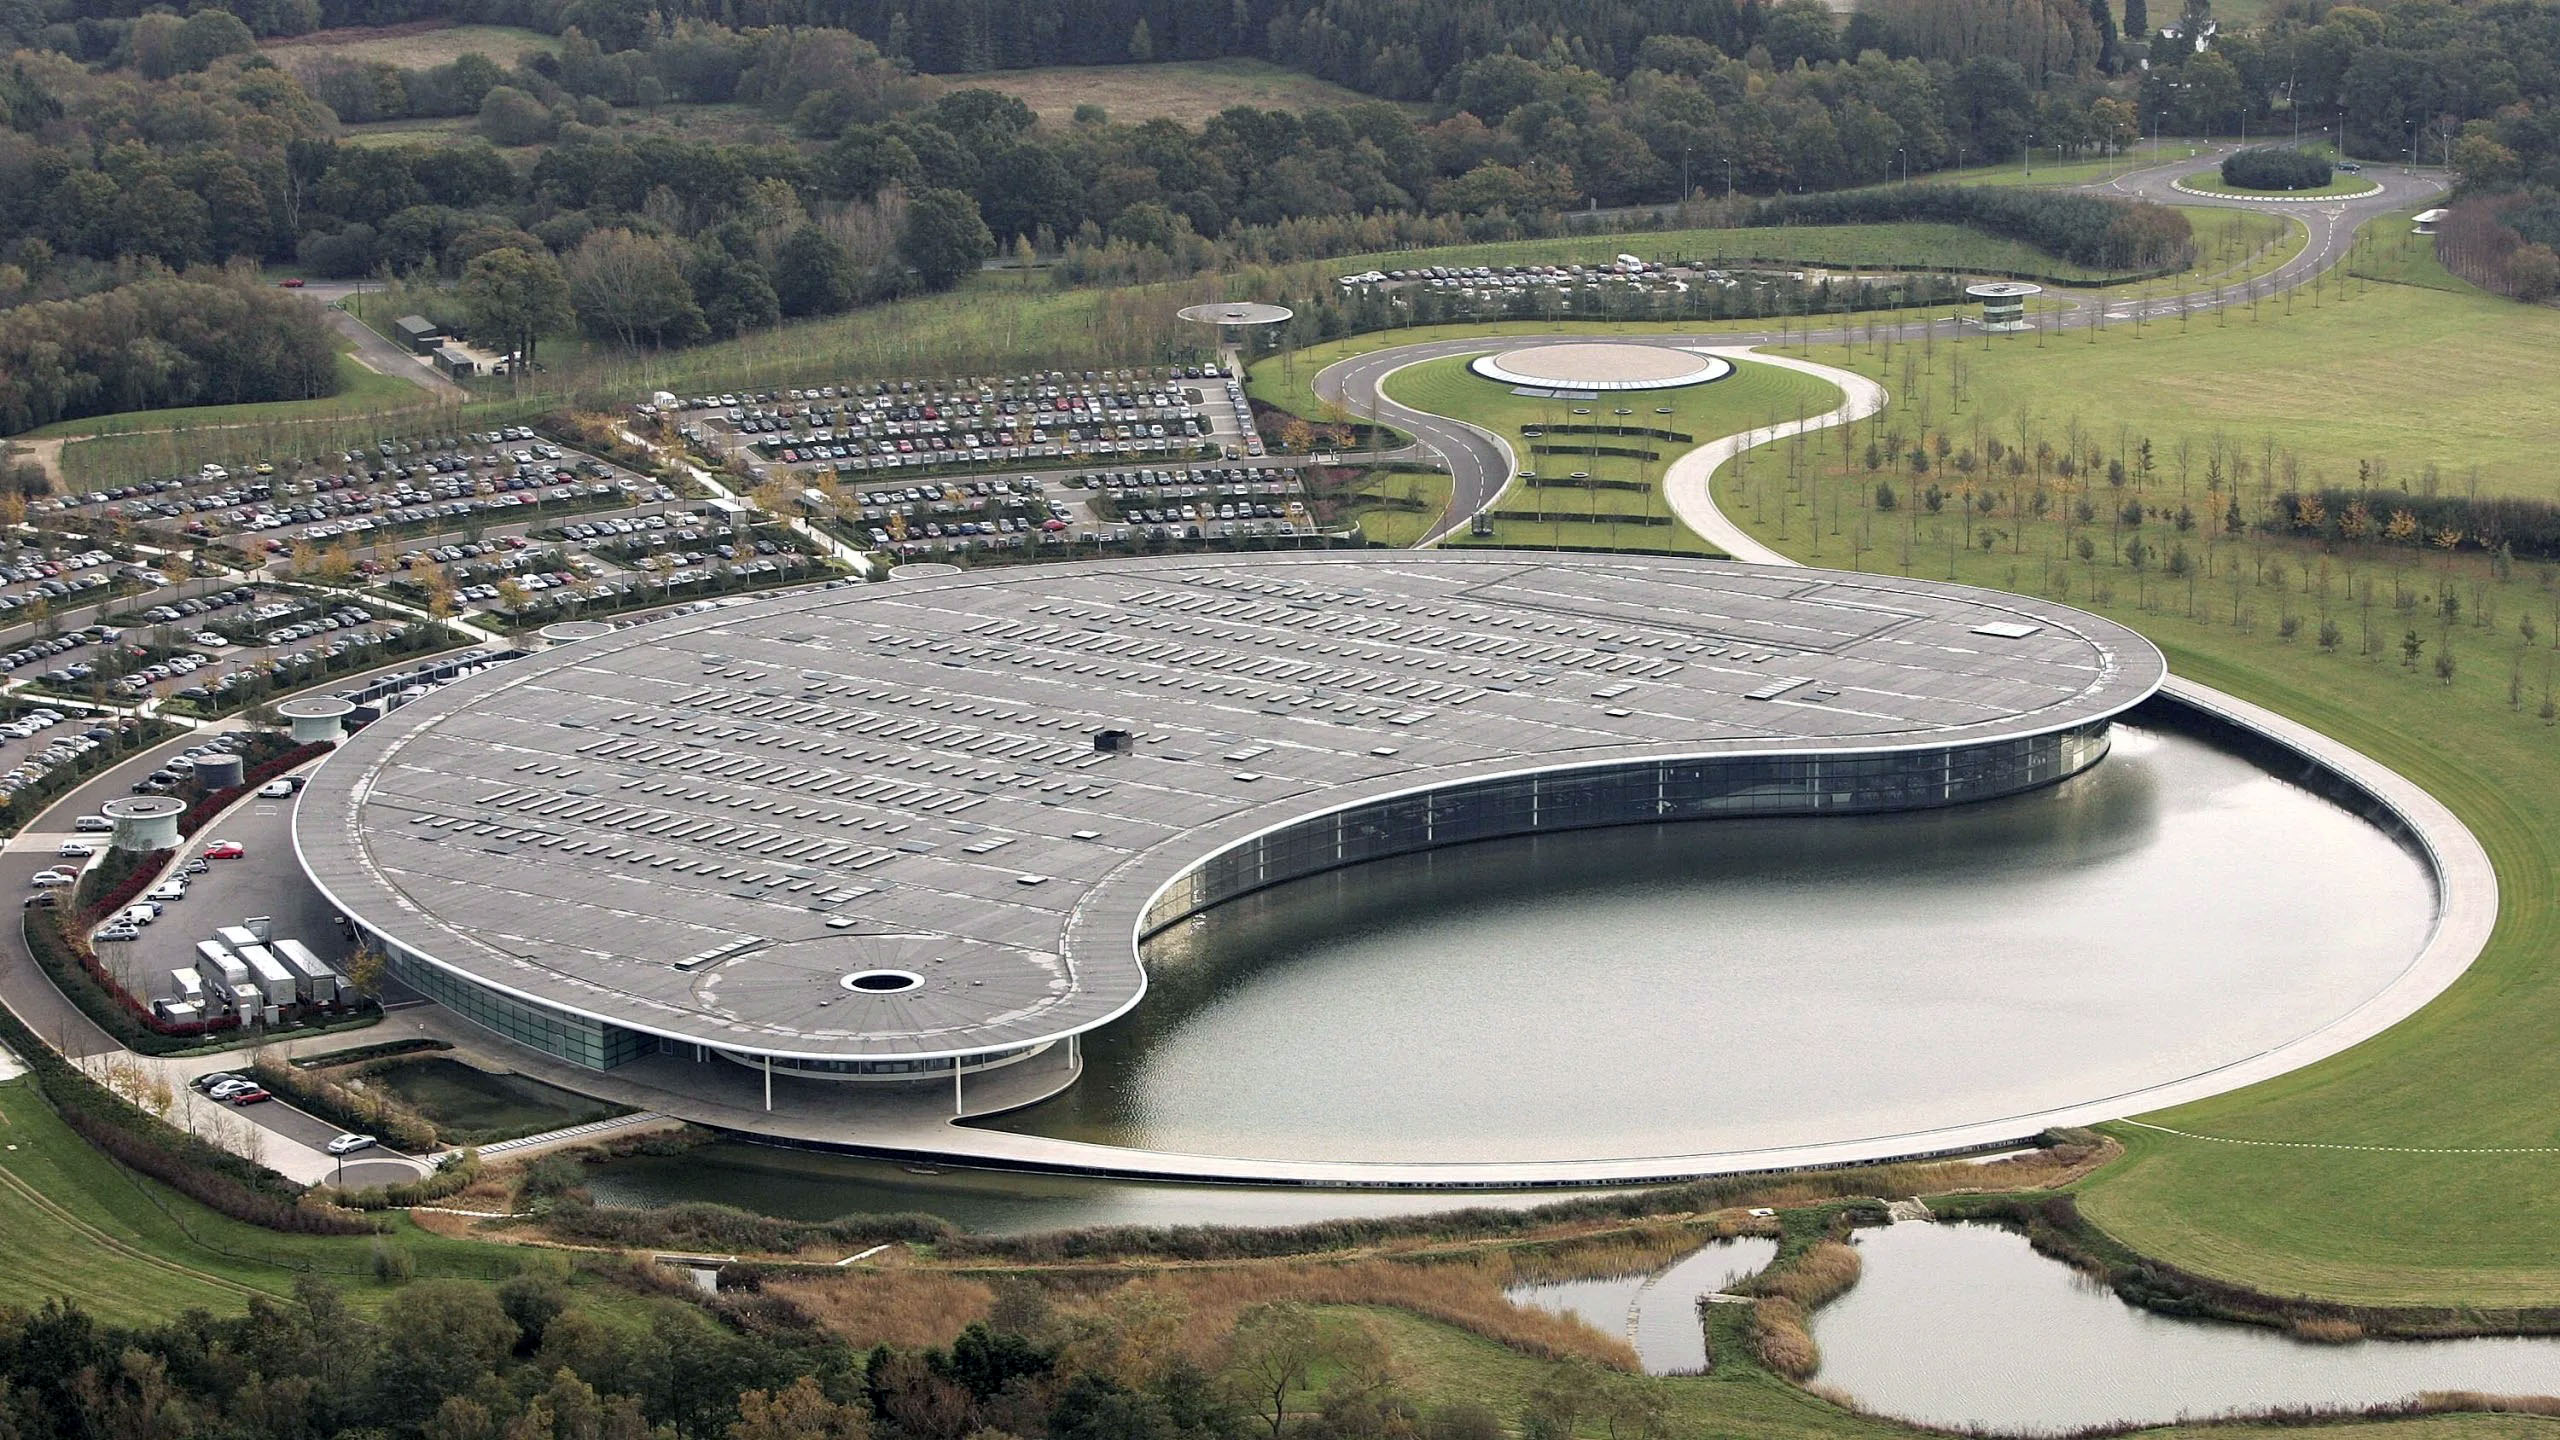 El McLaren Tecnology Center ya no es propiedad de la marca. Lo vendieron en 2021 y ahora lo alquilan para su uso